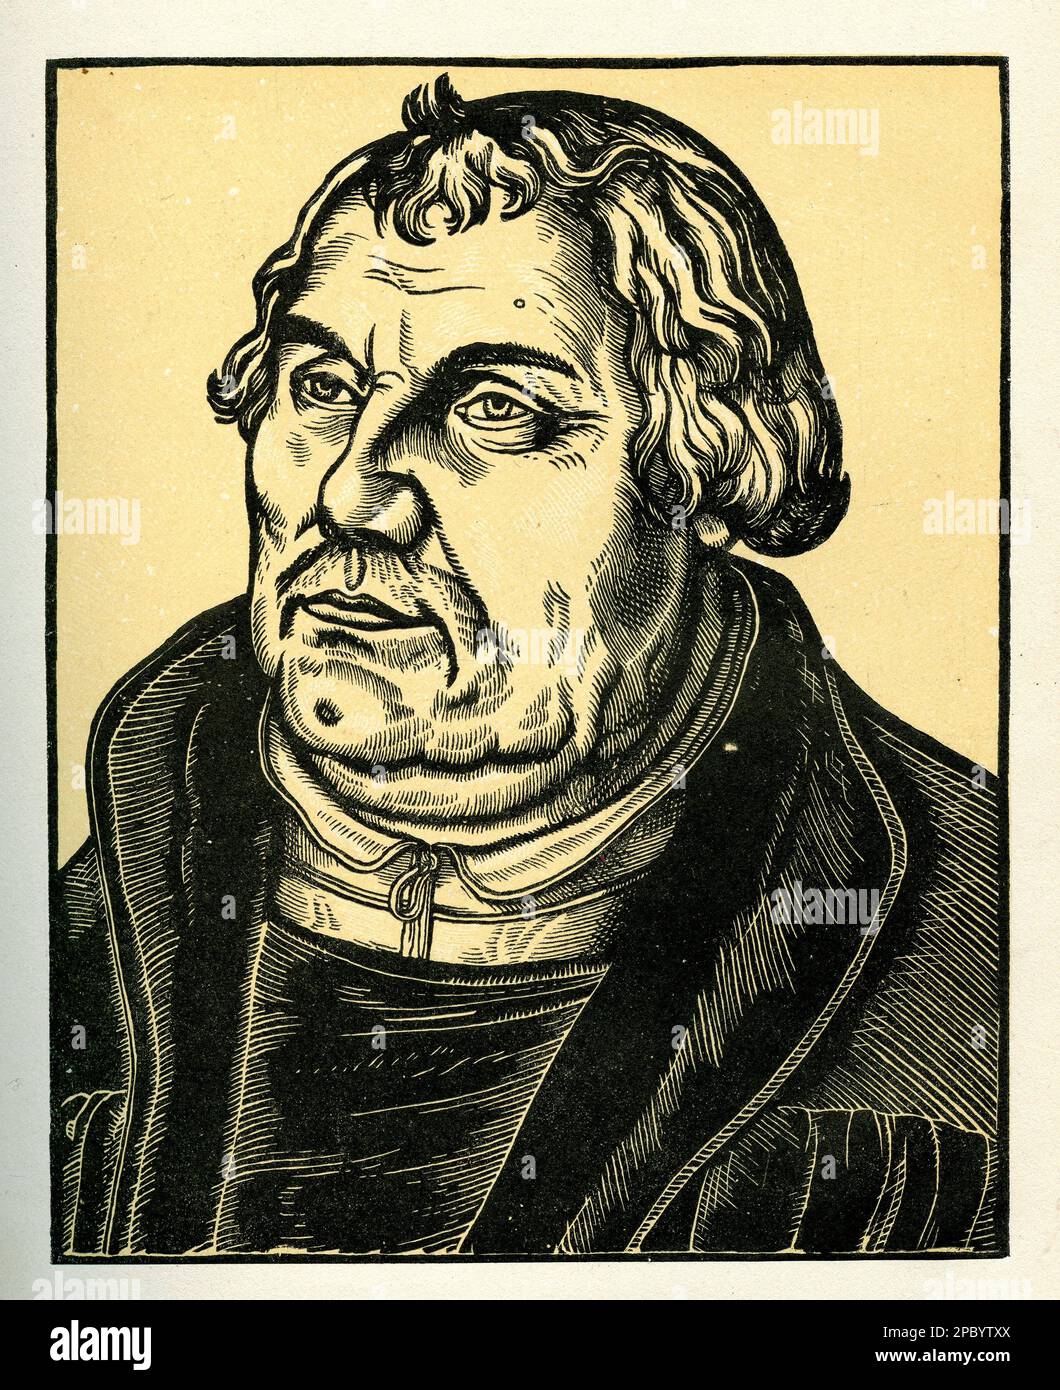 Le portrait de Martin Luther de Lucas Cranach dépeint le chef religieux avec une expression ébale et un regard déterminé. Luther porte une robe de moine. La peinture capture l'essence de la réforme protestante et le rôle central de Luther dans celle-ci. Banque D'Images